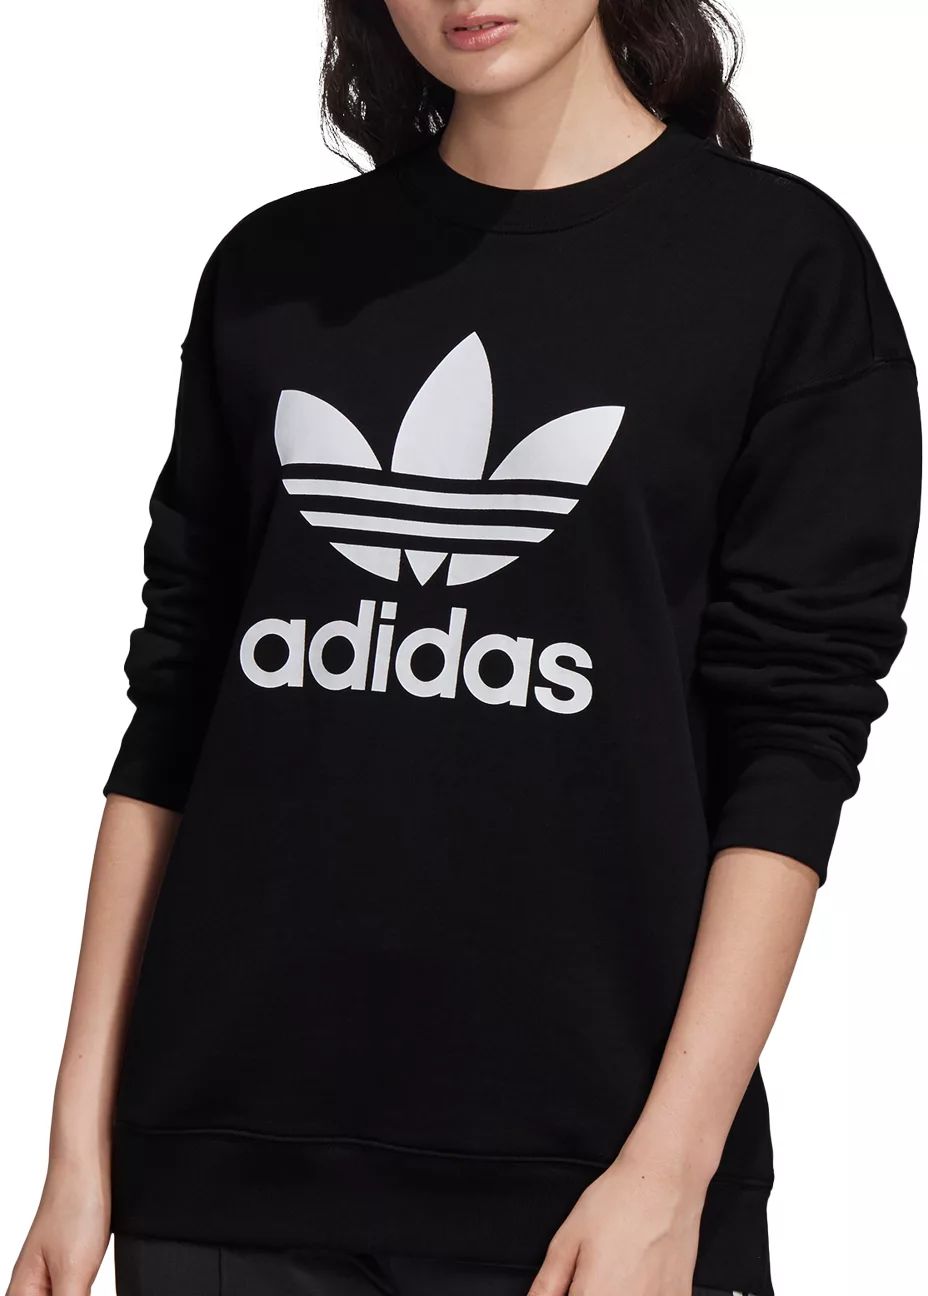 adidas Women's Originals Trefoil Crew Neck Sweatshirt, 3X, Black | Dick's Sporting Goods